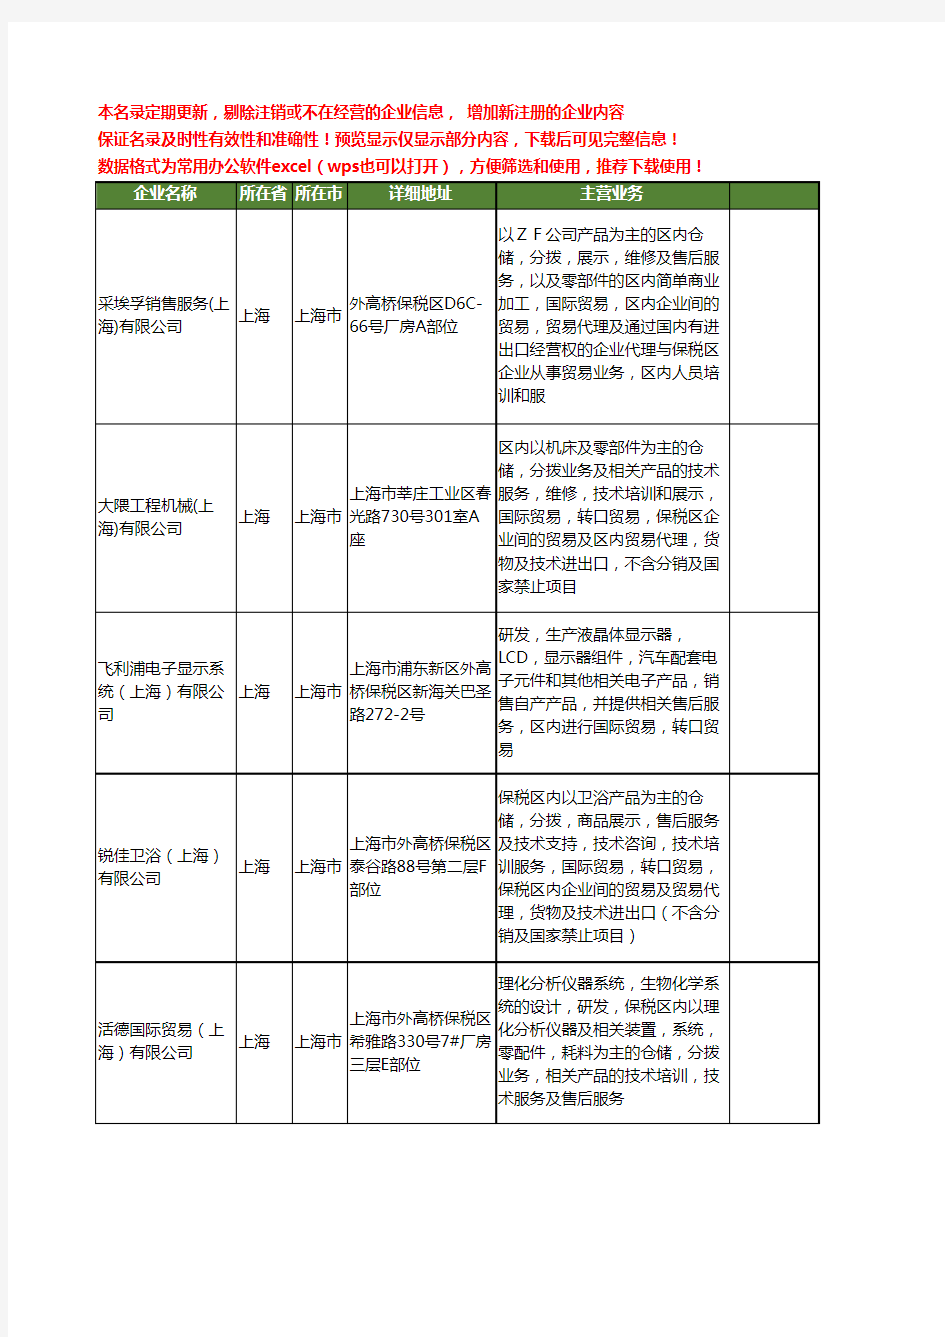 新版上海市分拨工商企业公司商家名录名单联系方式大全40家